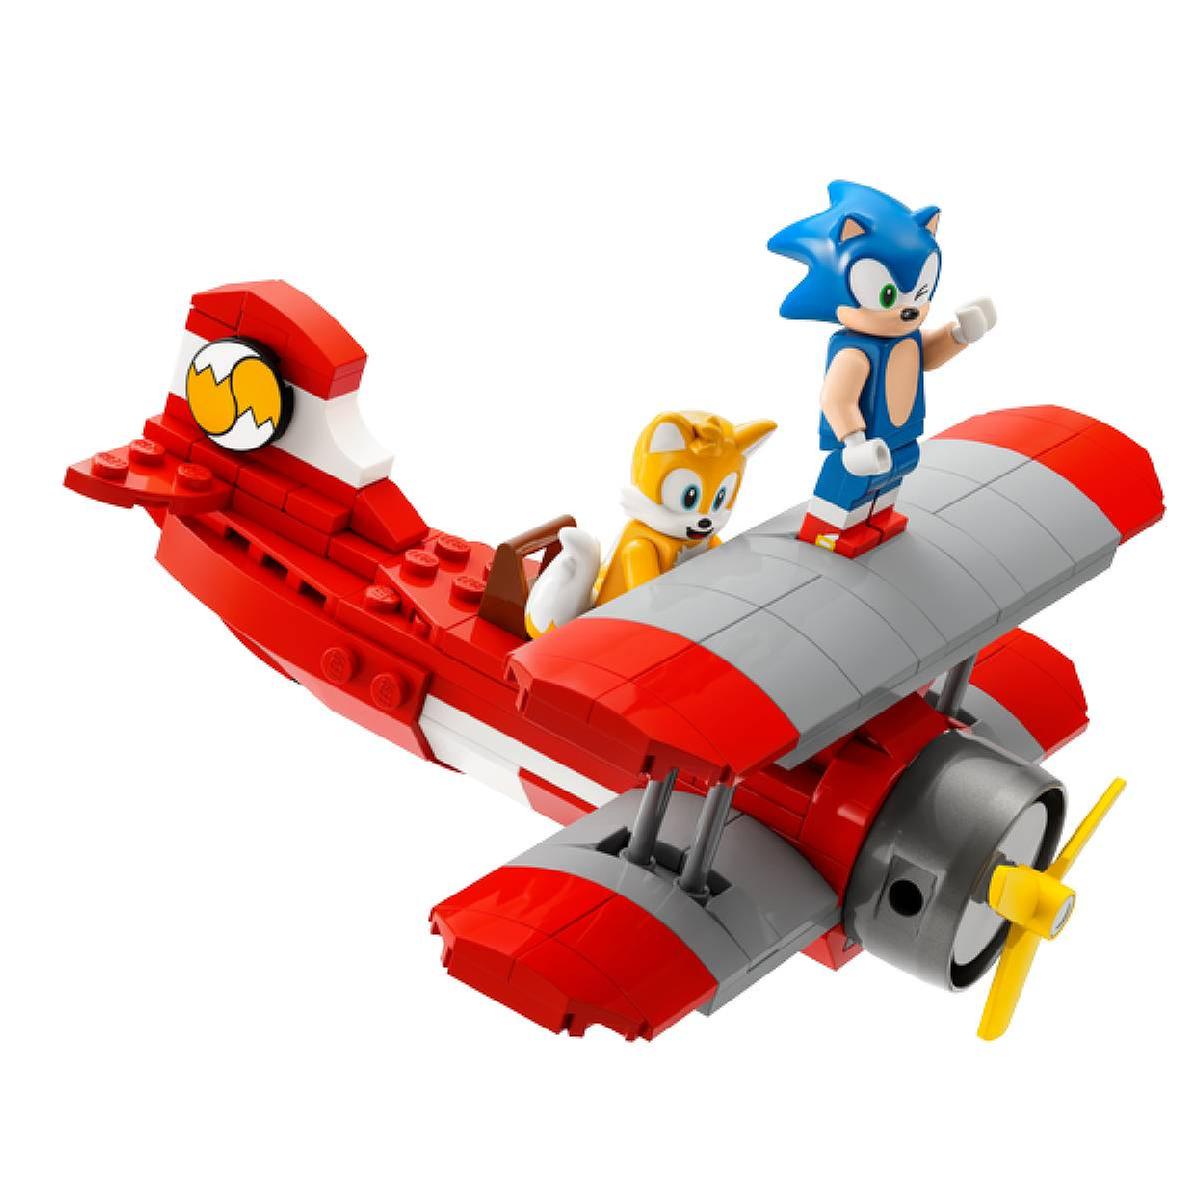 LEGO Sonic The Hedgehog - A Oficina de Tails e o Avião Tornado